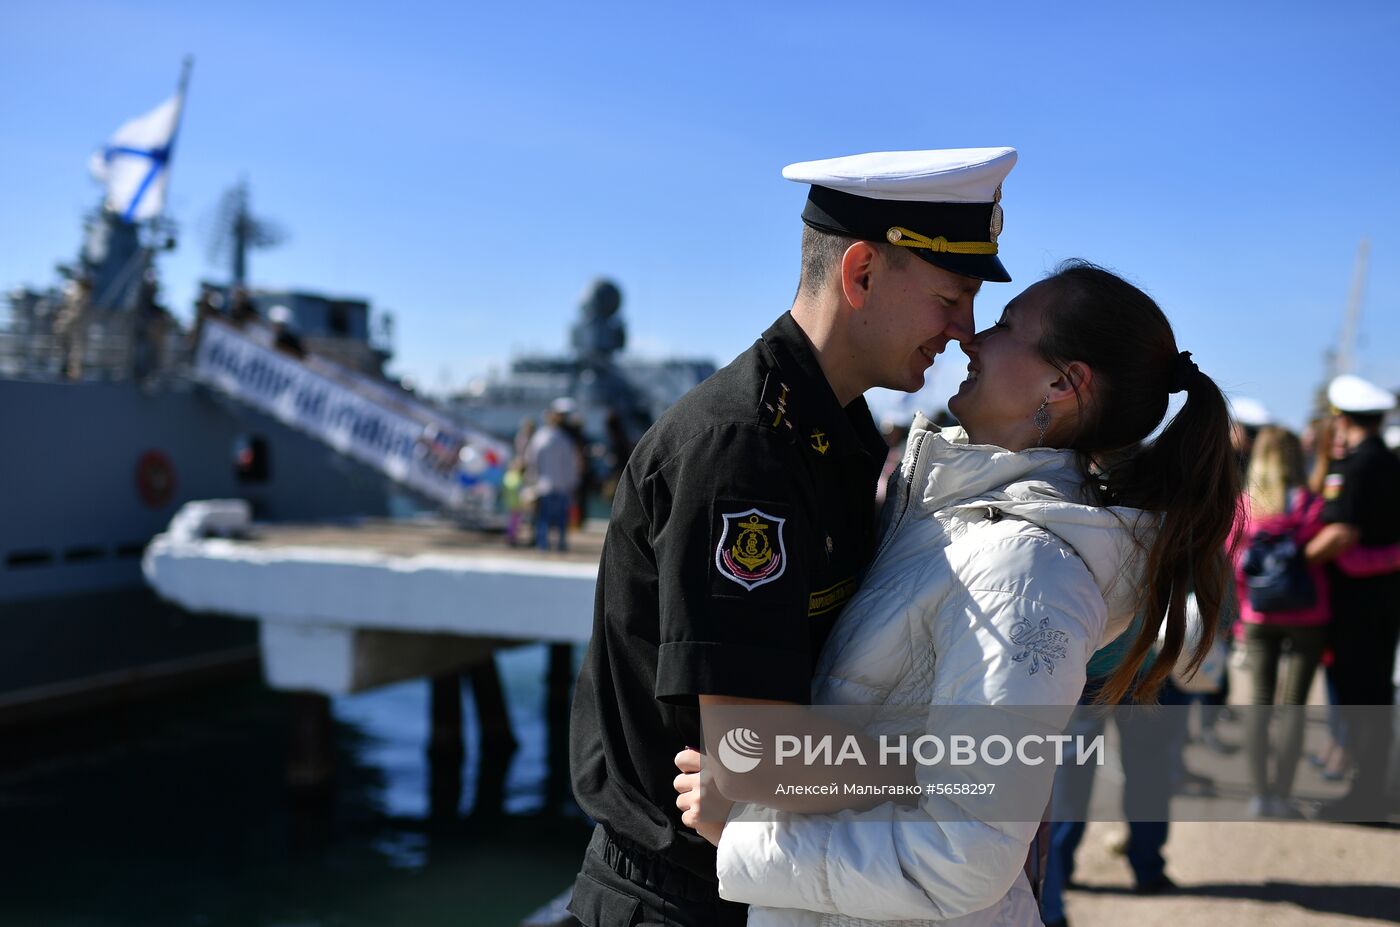 Встреча фрегата «Адмирал Макаров» в Севастополе 